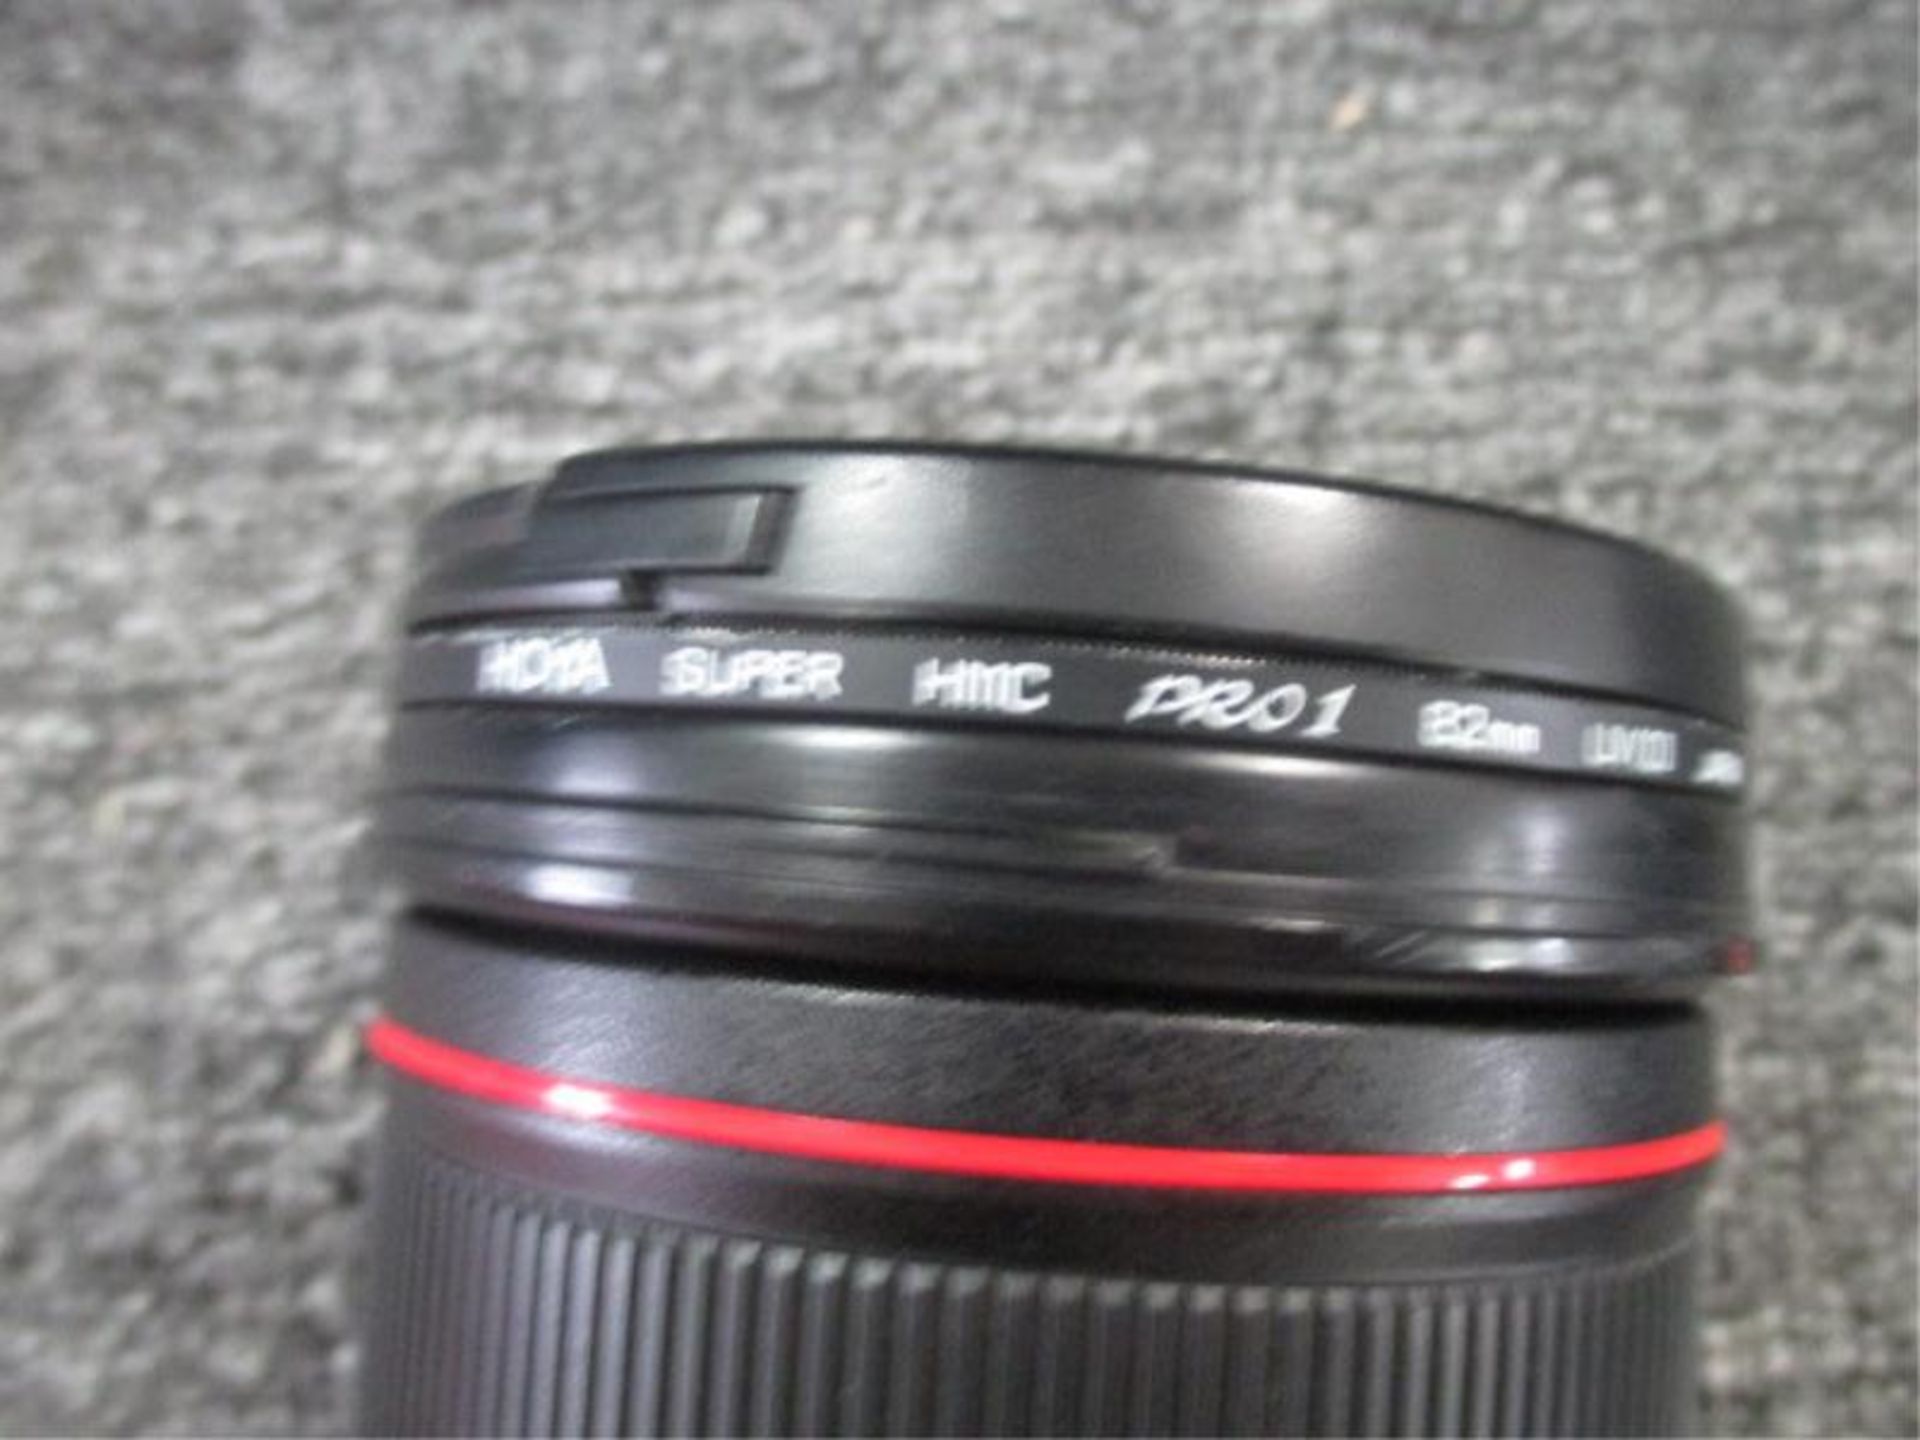 Canon EF 24-70 II F/2.8L USM Lens - Image 2 of 3